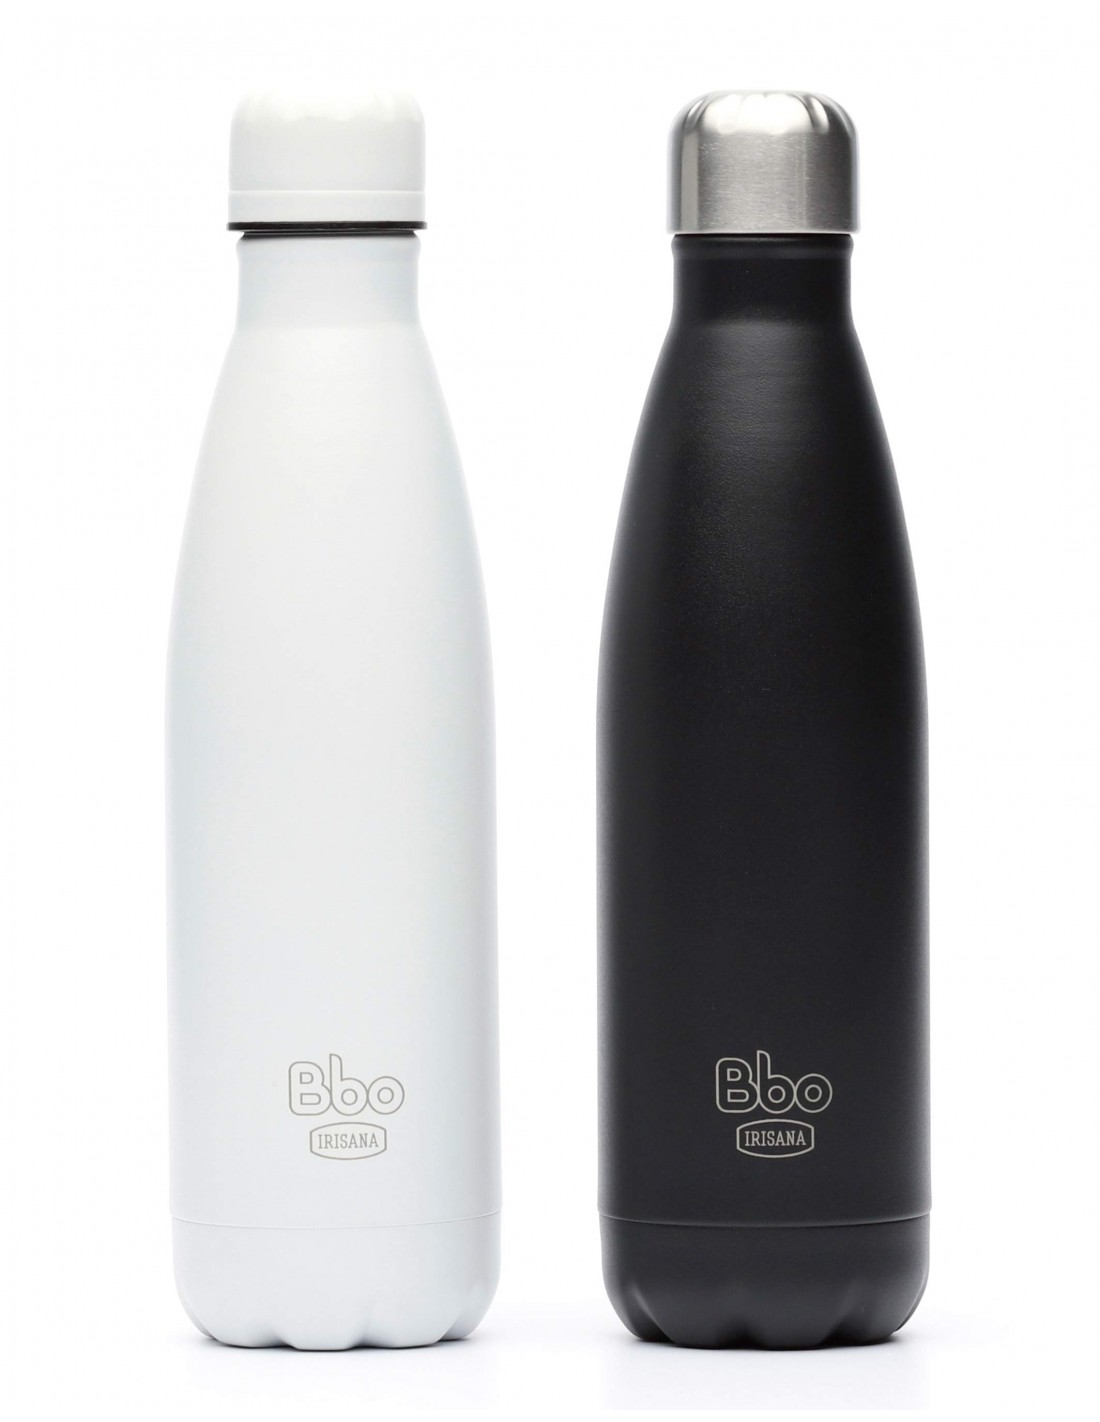 ▷ Termo infusionador Botella reutilizable · BBO Irisana